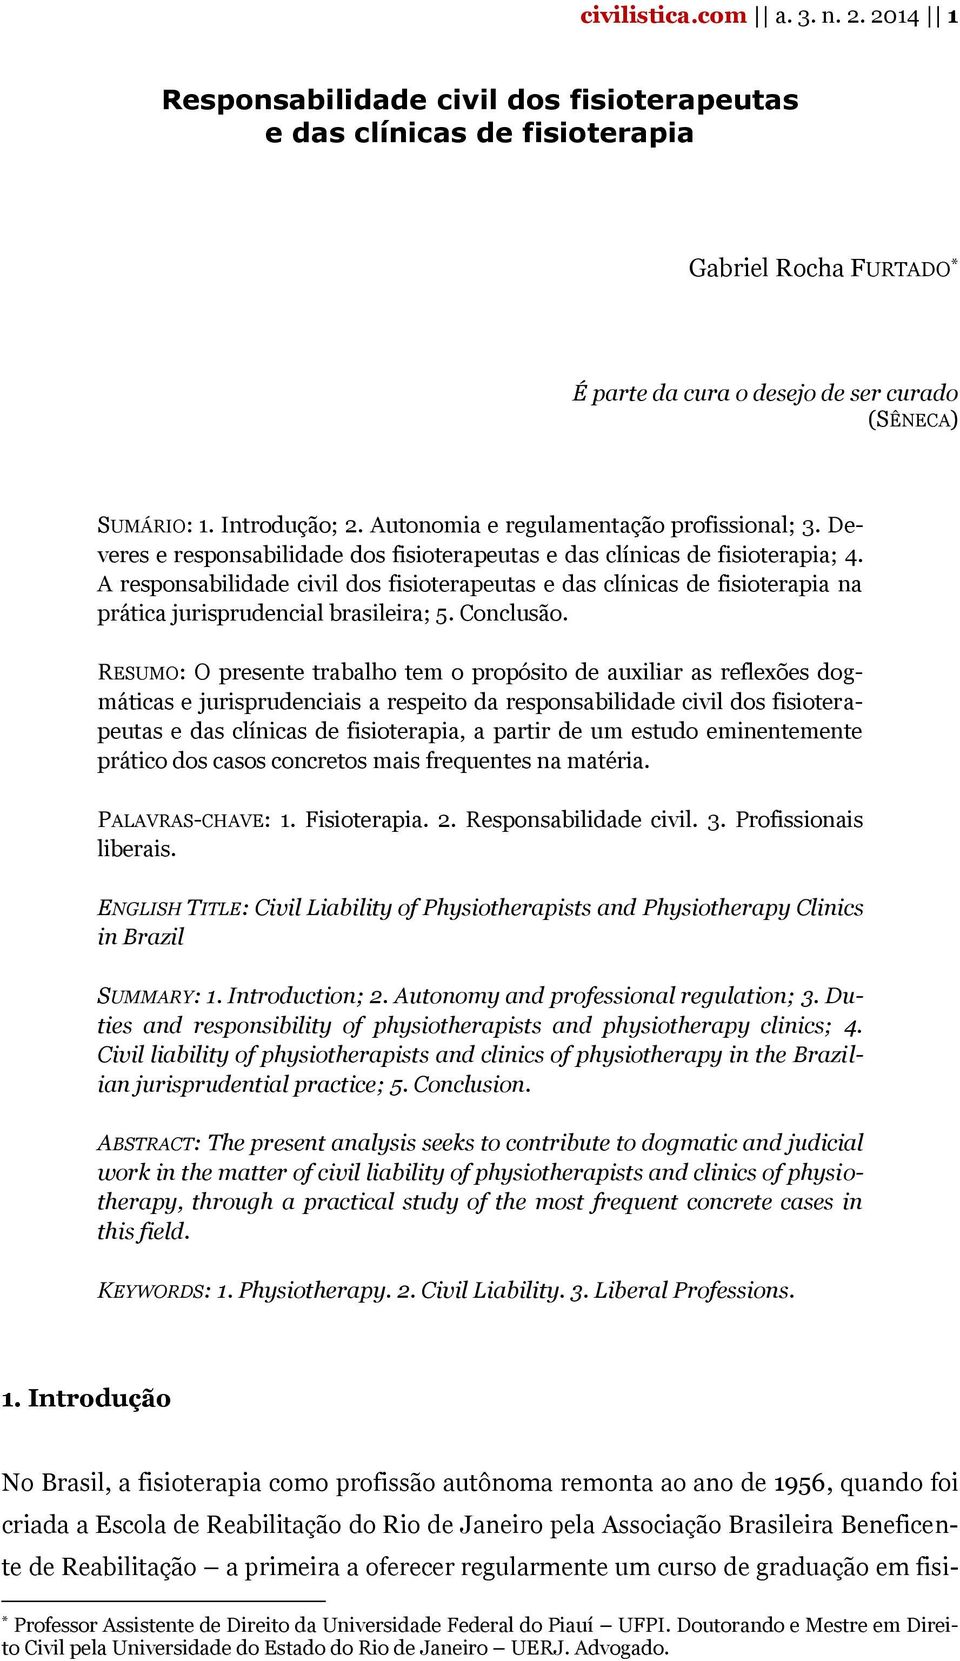 A responsabilidade civil dos fisioterapeutas e das clínicas de fisioterapia na prática jurisprudencial brasileira; 5. Conclusão.